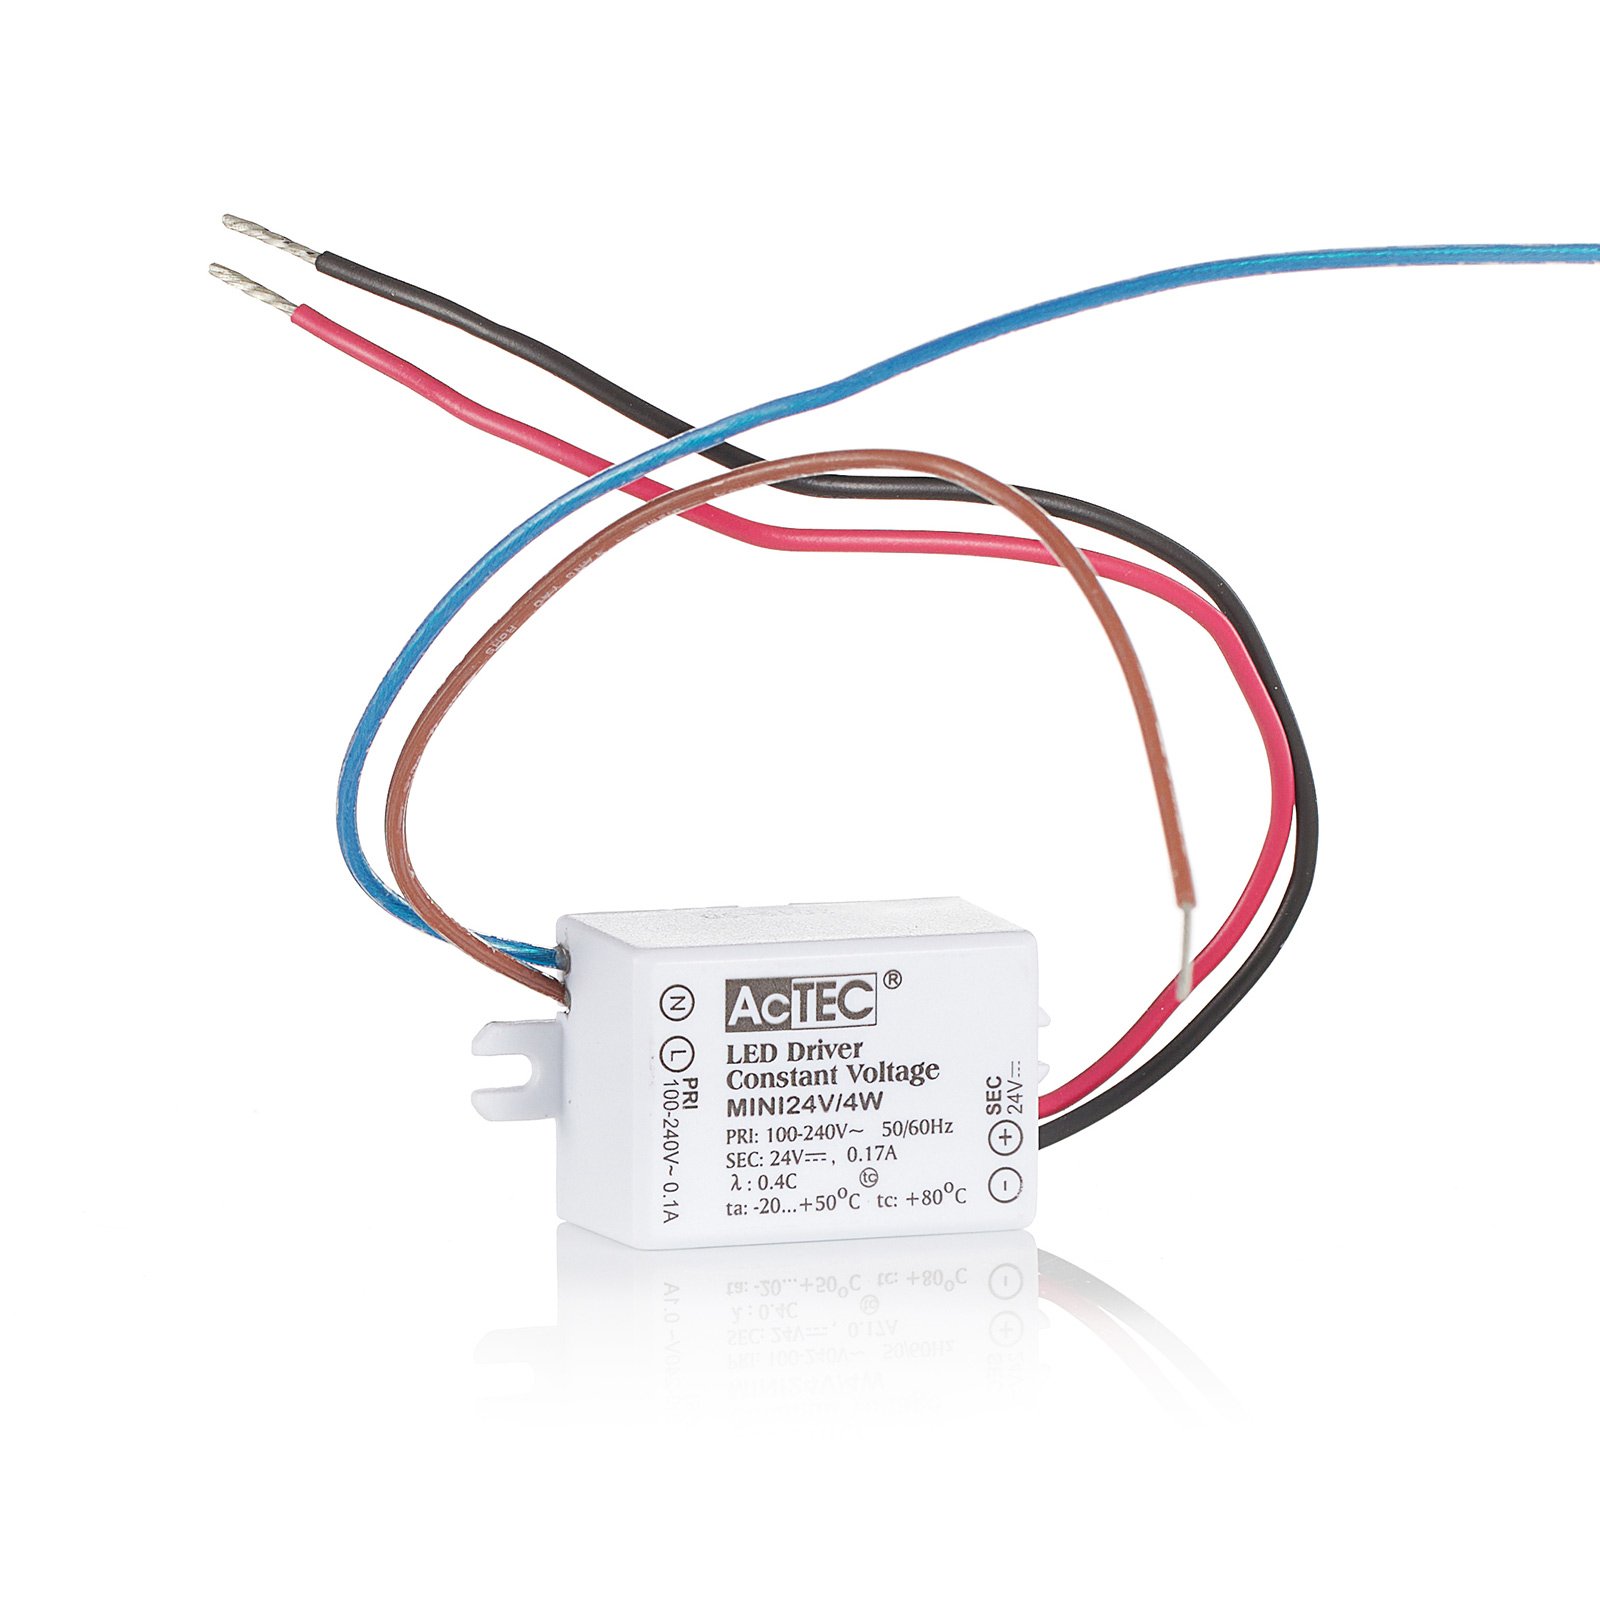 AcTEC Mini LED-driver CV 24V, 4 W, IP65